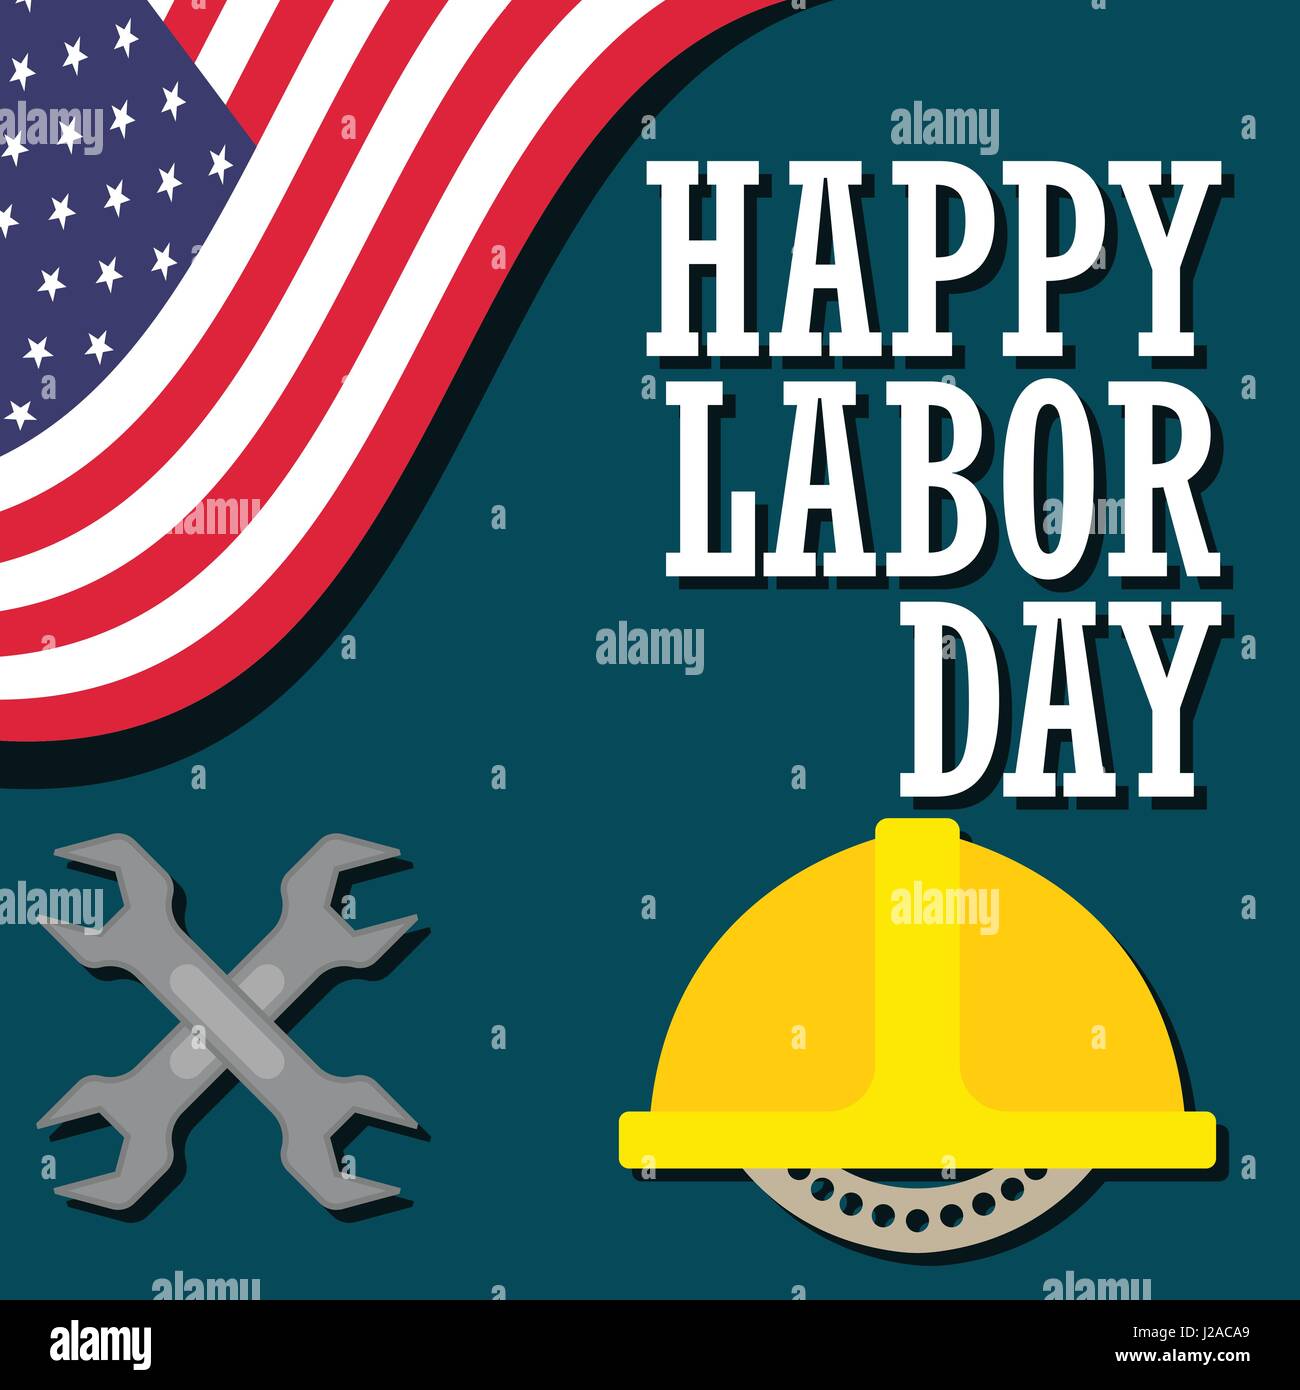 Plakat der glückliche Tag der Arbeit, Maifeiertag, Verkauf Tag, Tag der Arbeit, 1. Mai. Vektor-illustration Stock Vektor